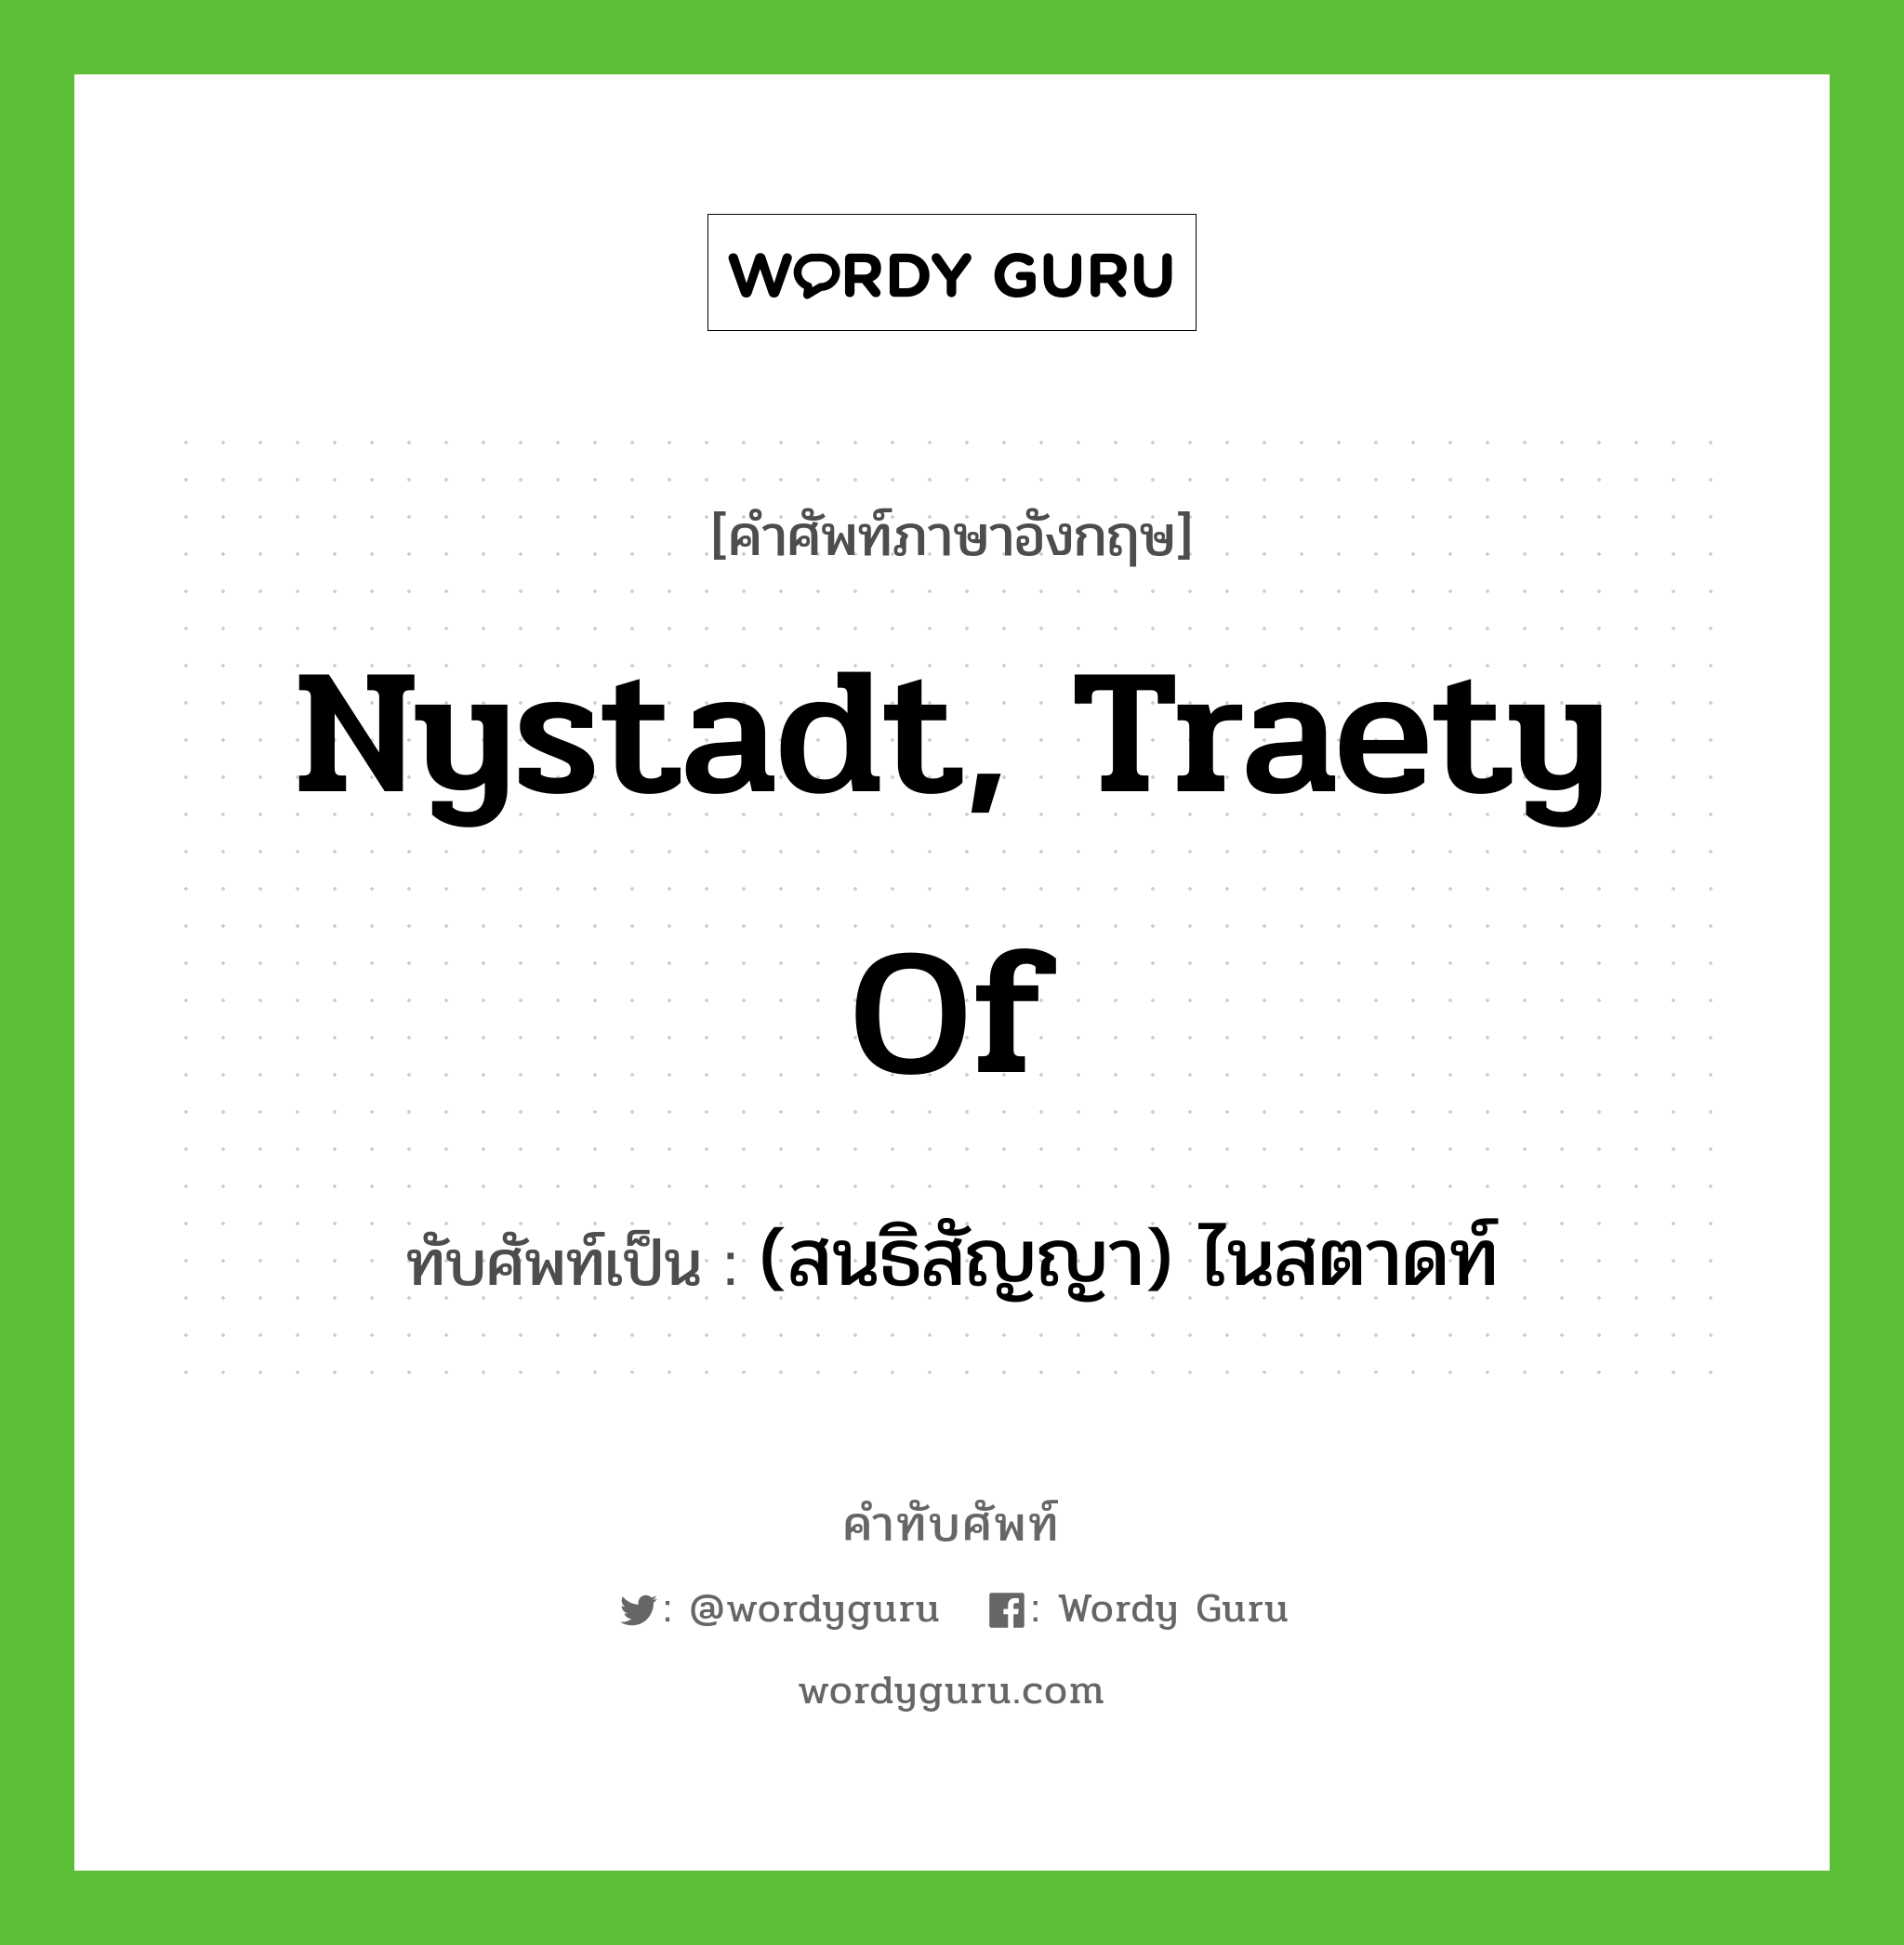 (สนธิสัญญา) ไนสตาดท์ เขียนอย่างไร?, คำศัพท์ภาษาอังกฤษ (สนธิสัญญา) ไนสตาดท์ ทับศัพท์เป็น Nystadt, Traety of